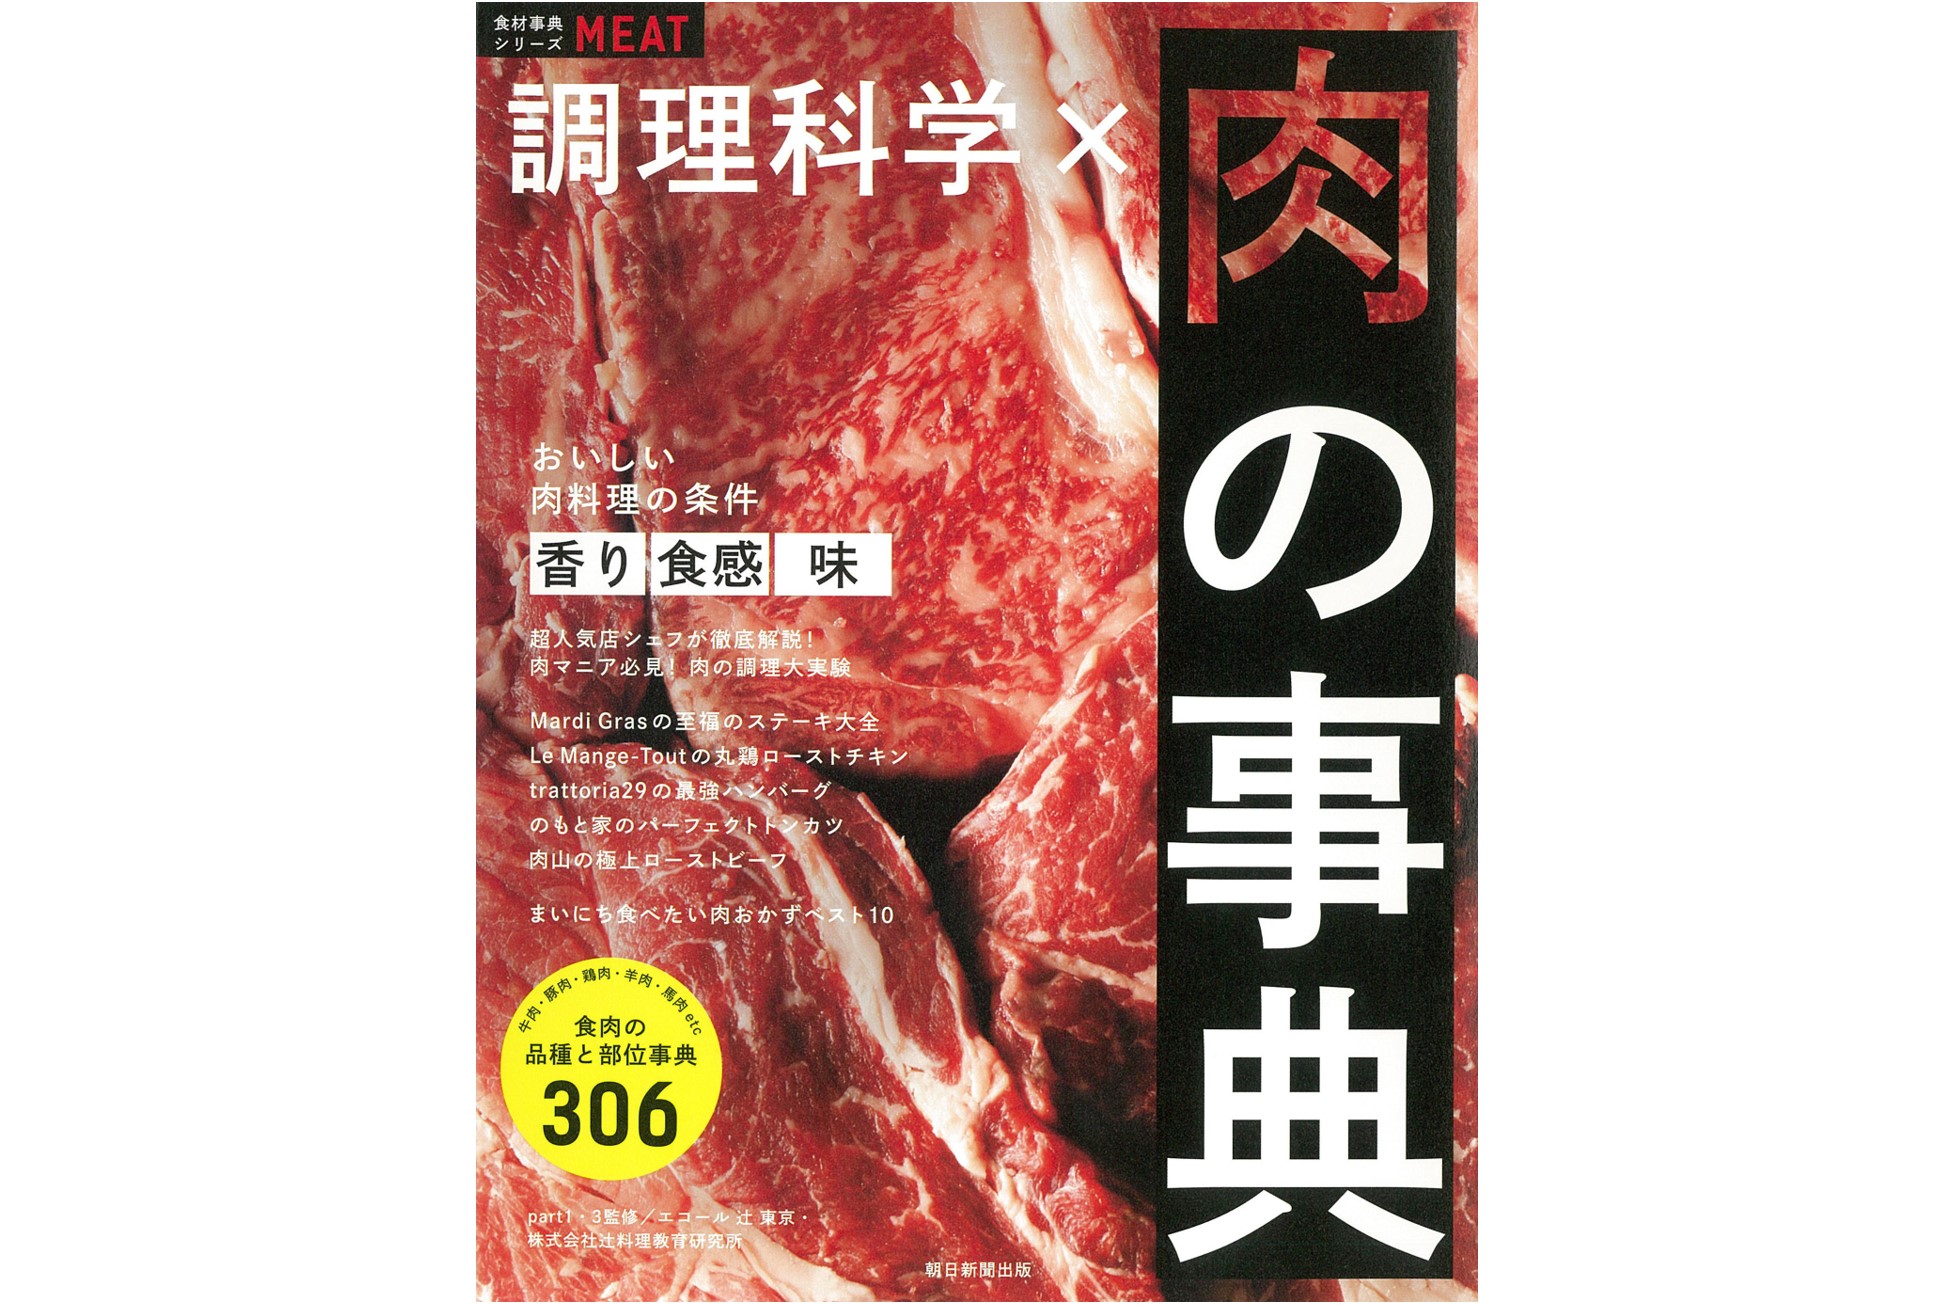 食材事典シリーズ『調理科学×肉の事典』